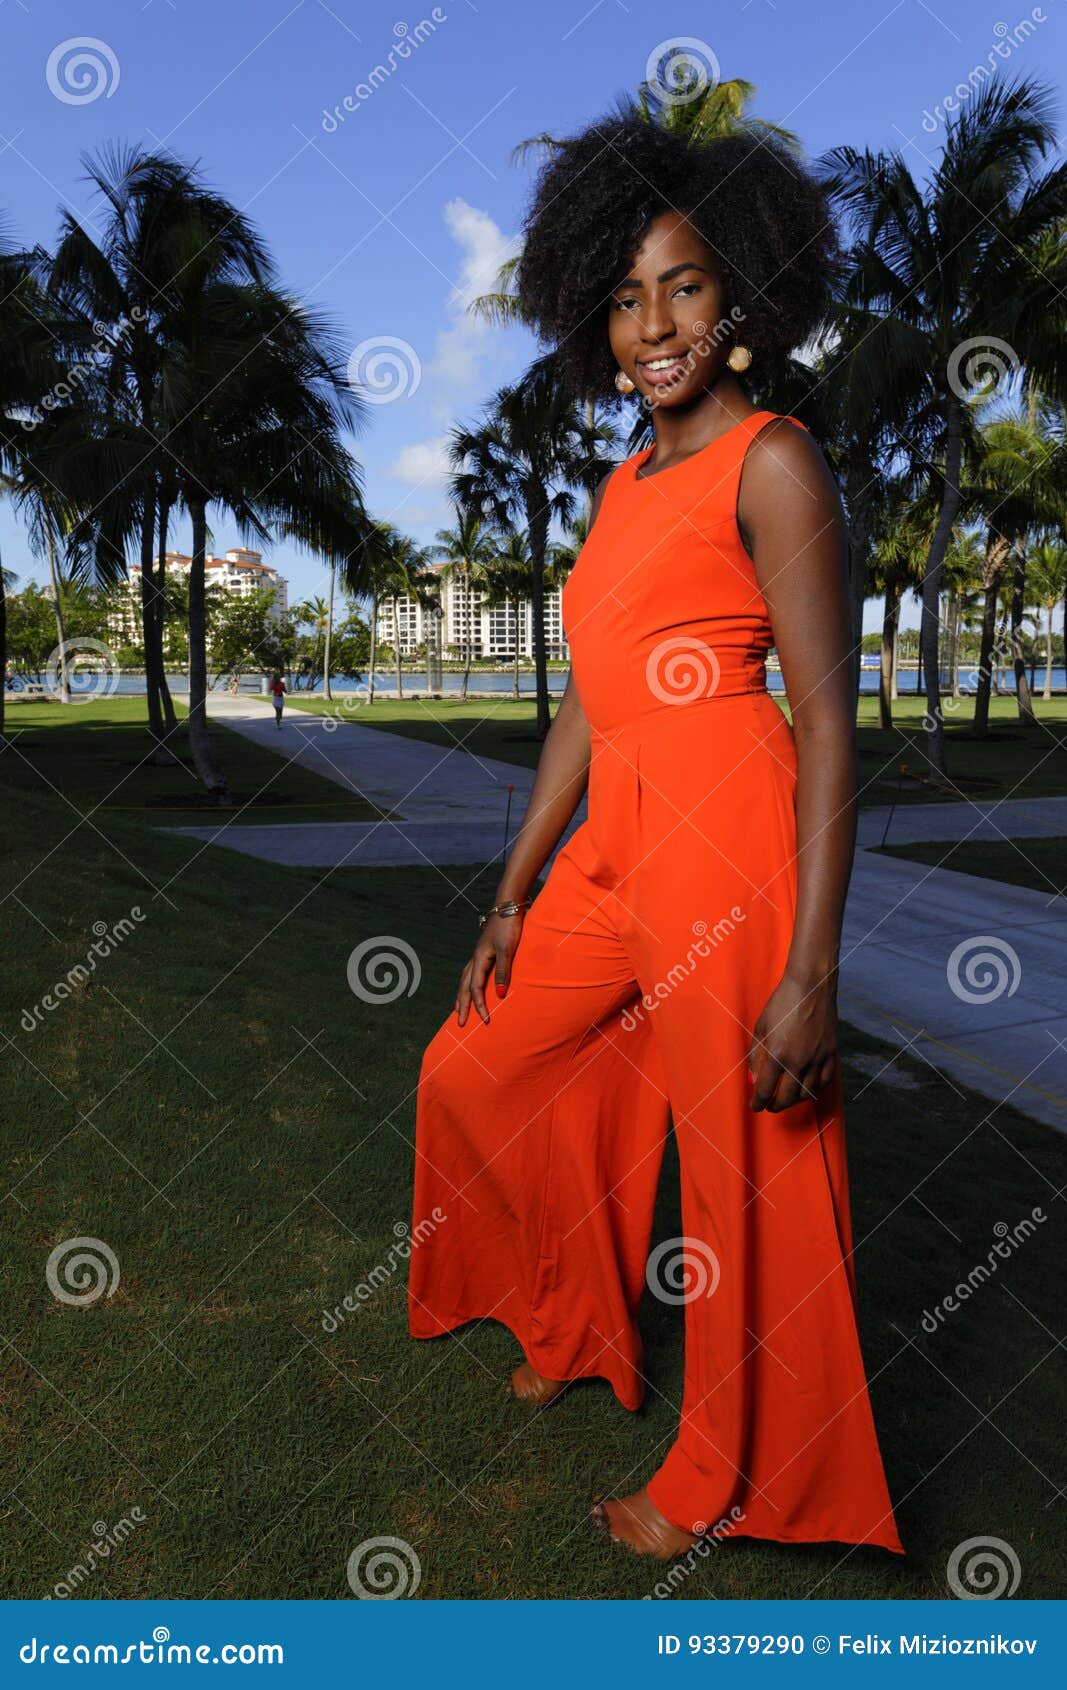 Anarkali Black and orange color gown